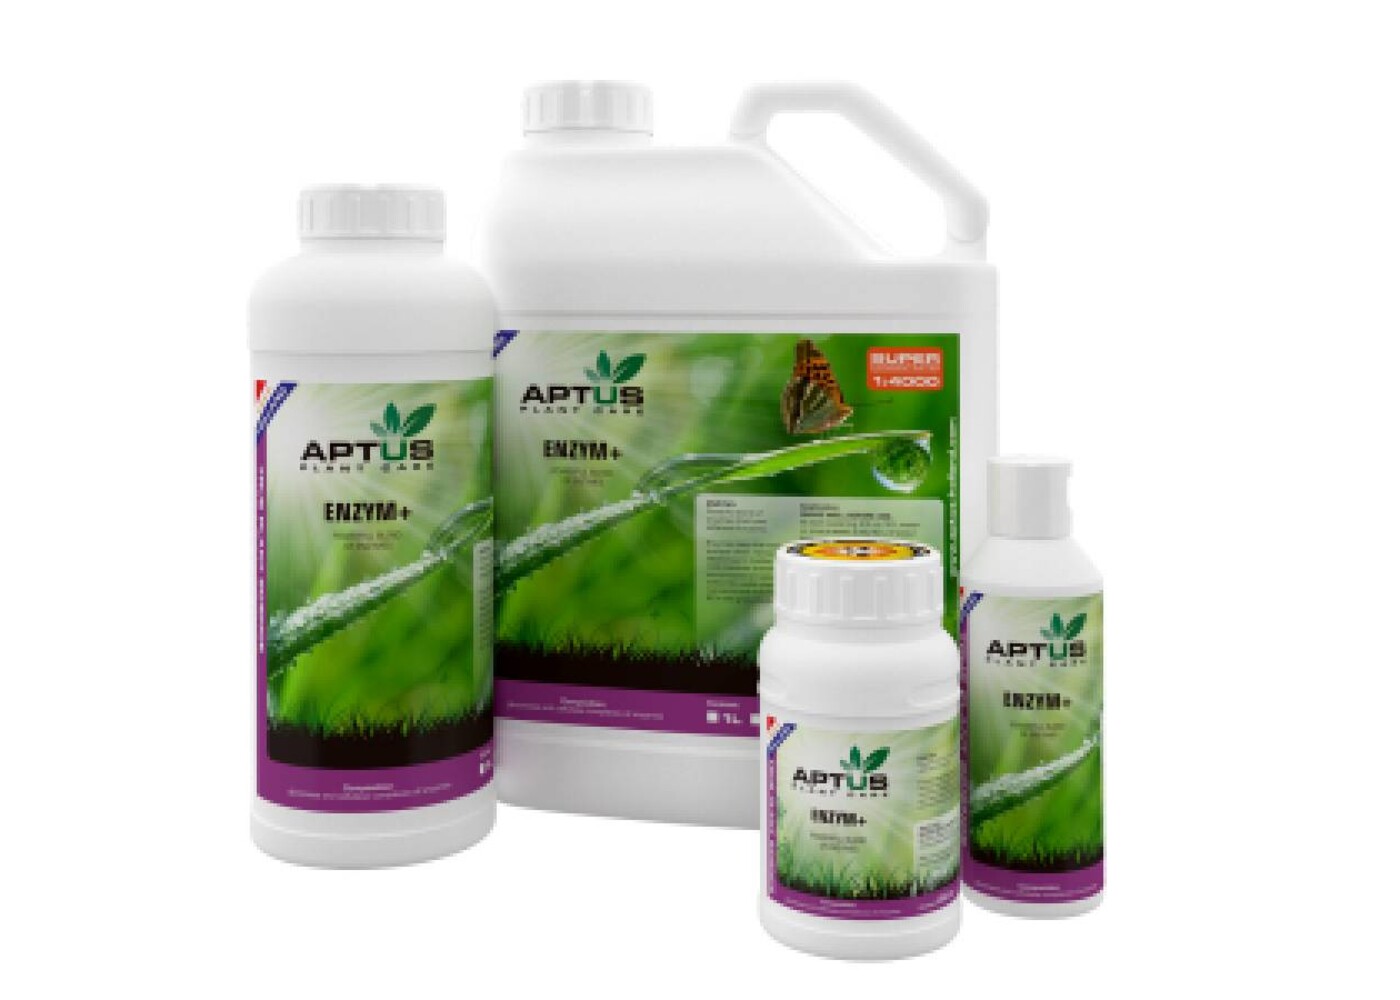 Aptus Aptus  Enzym+ 100ml